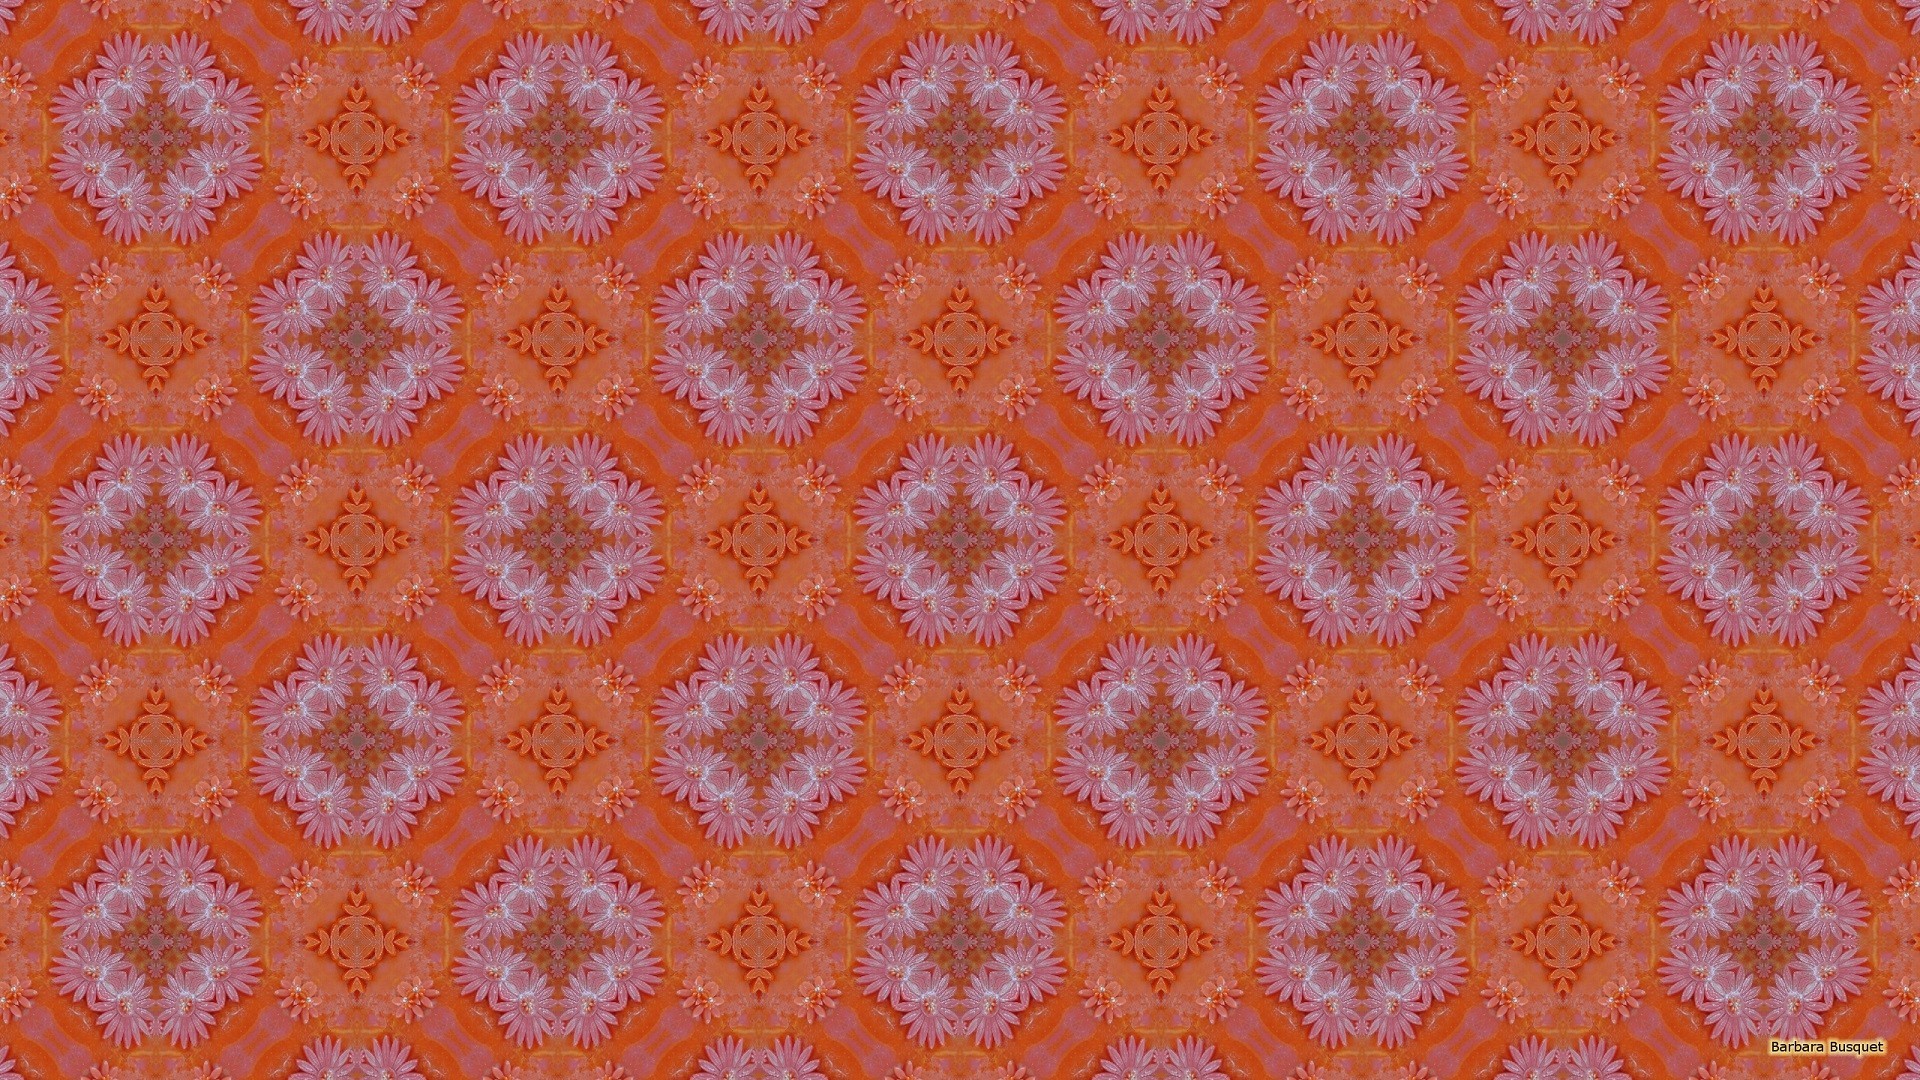 1920x1080 Pink orange birthday cake pattern wallpaper